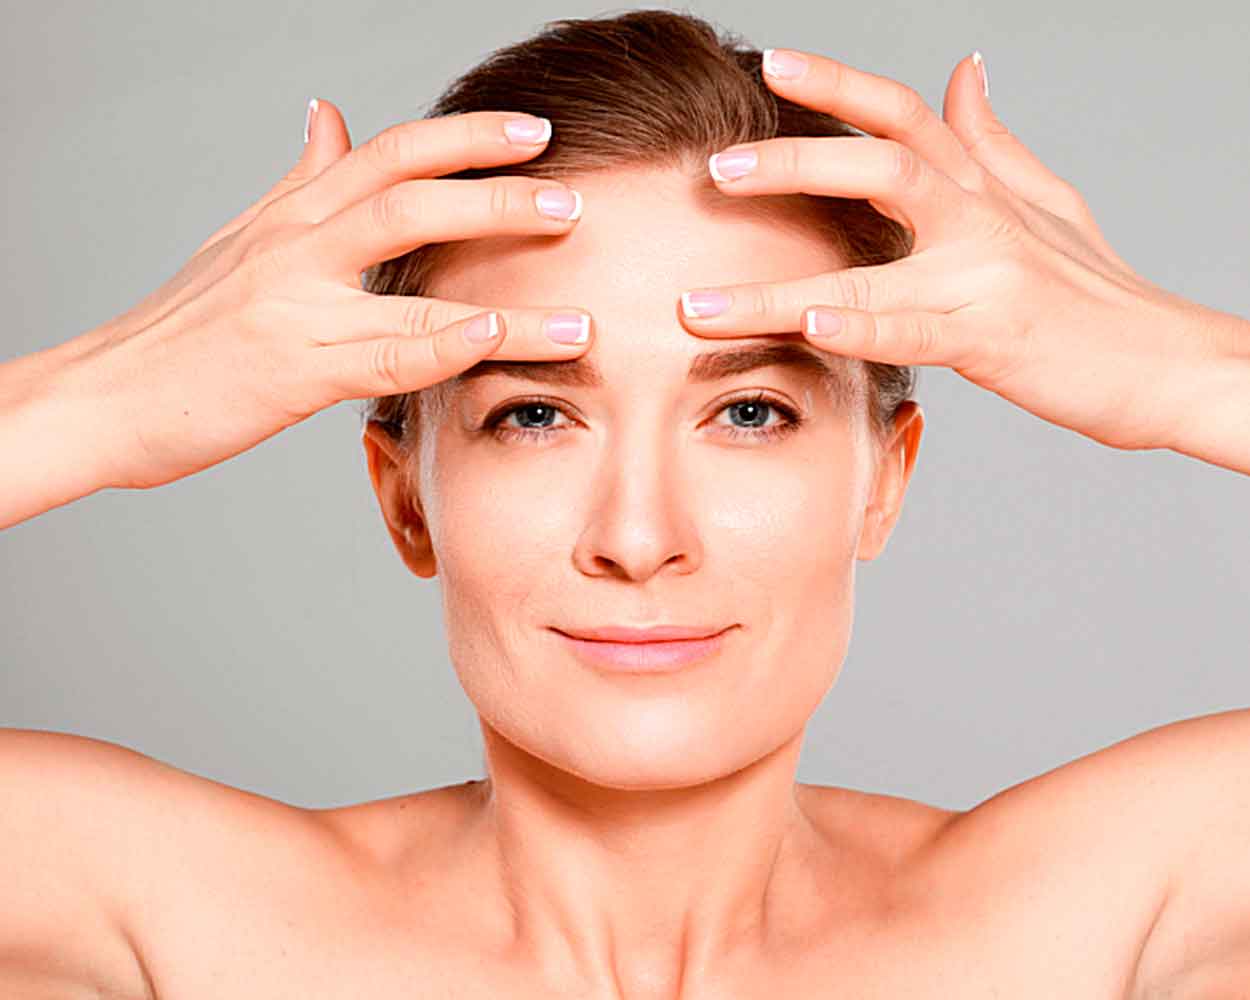 Как делать массаж глаз для улучшения зрения? «ochkov.net»